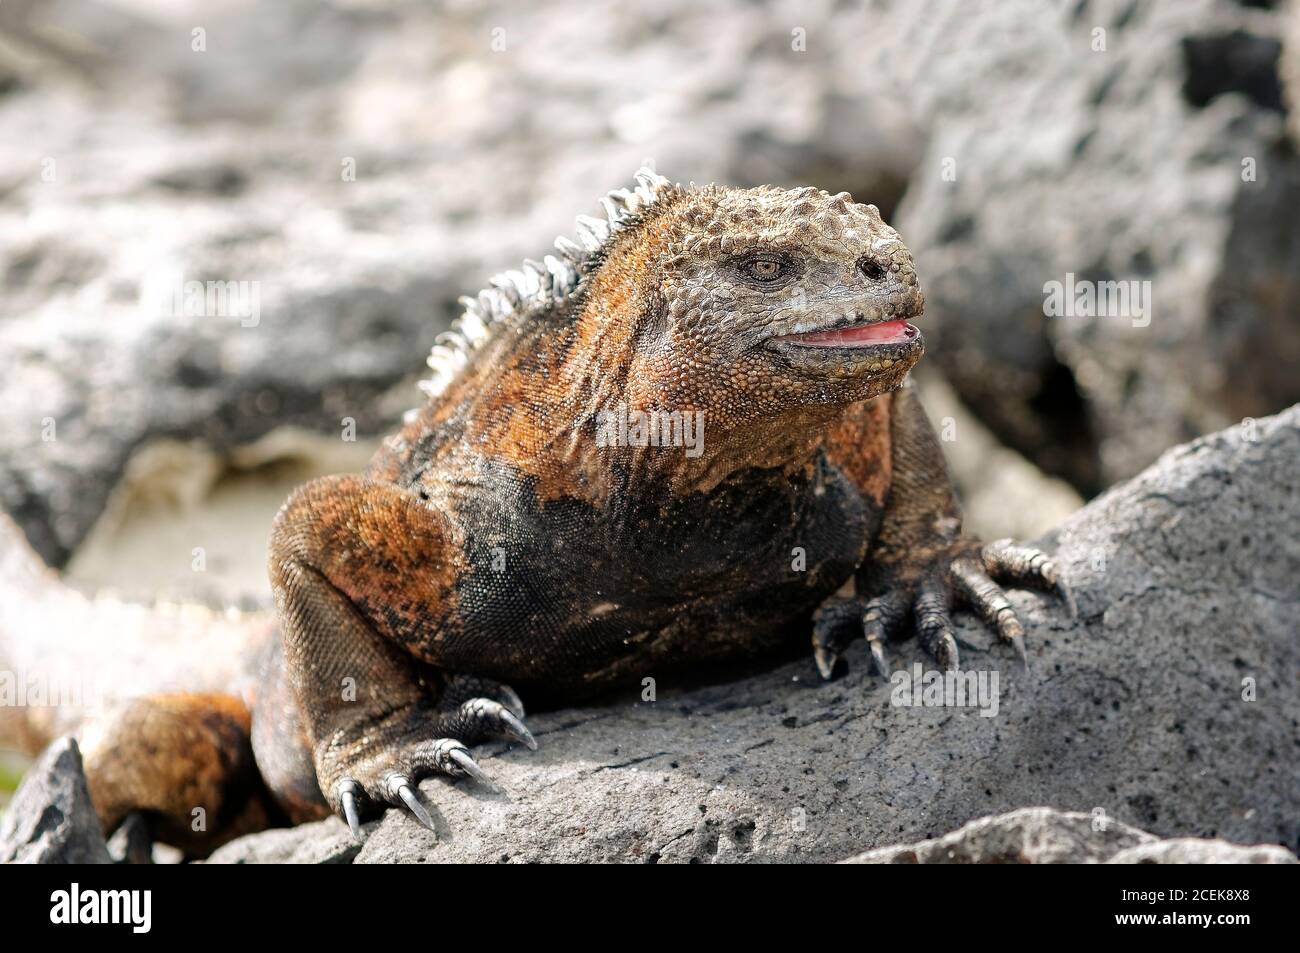 Une belle Iguana il se réchauffe, se posant sur une roche volcanique à l'île de San Cristobal, après la pêche dans l'océan Pacifique. Banque D'Images